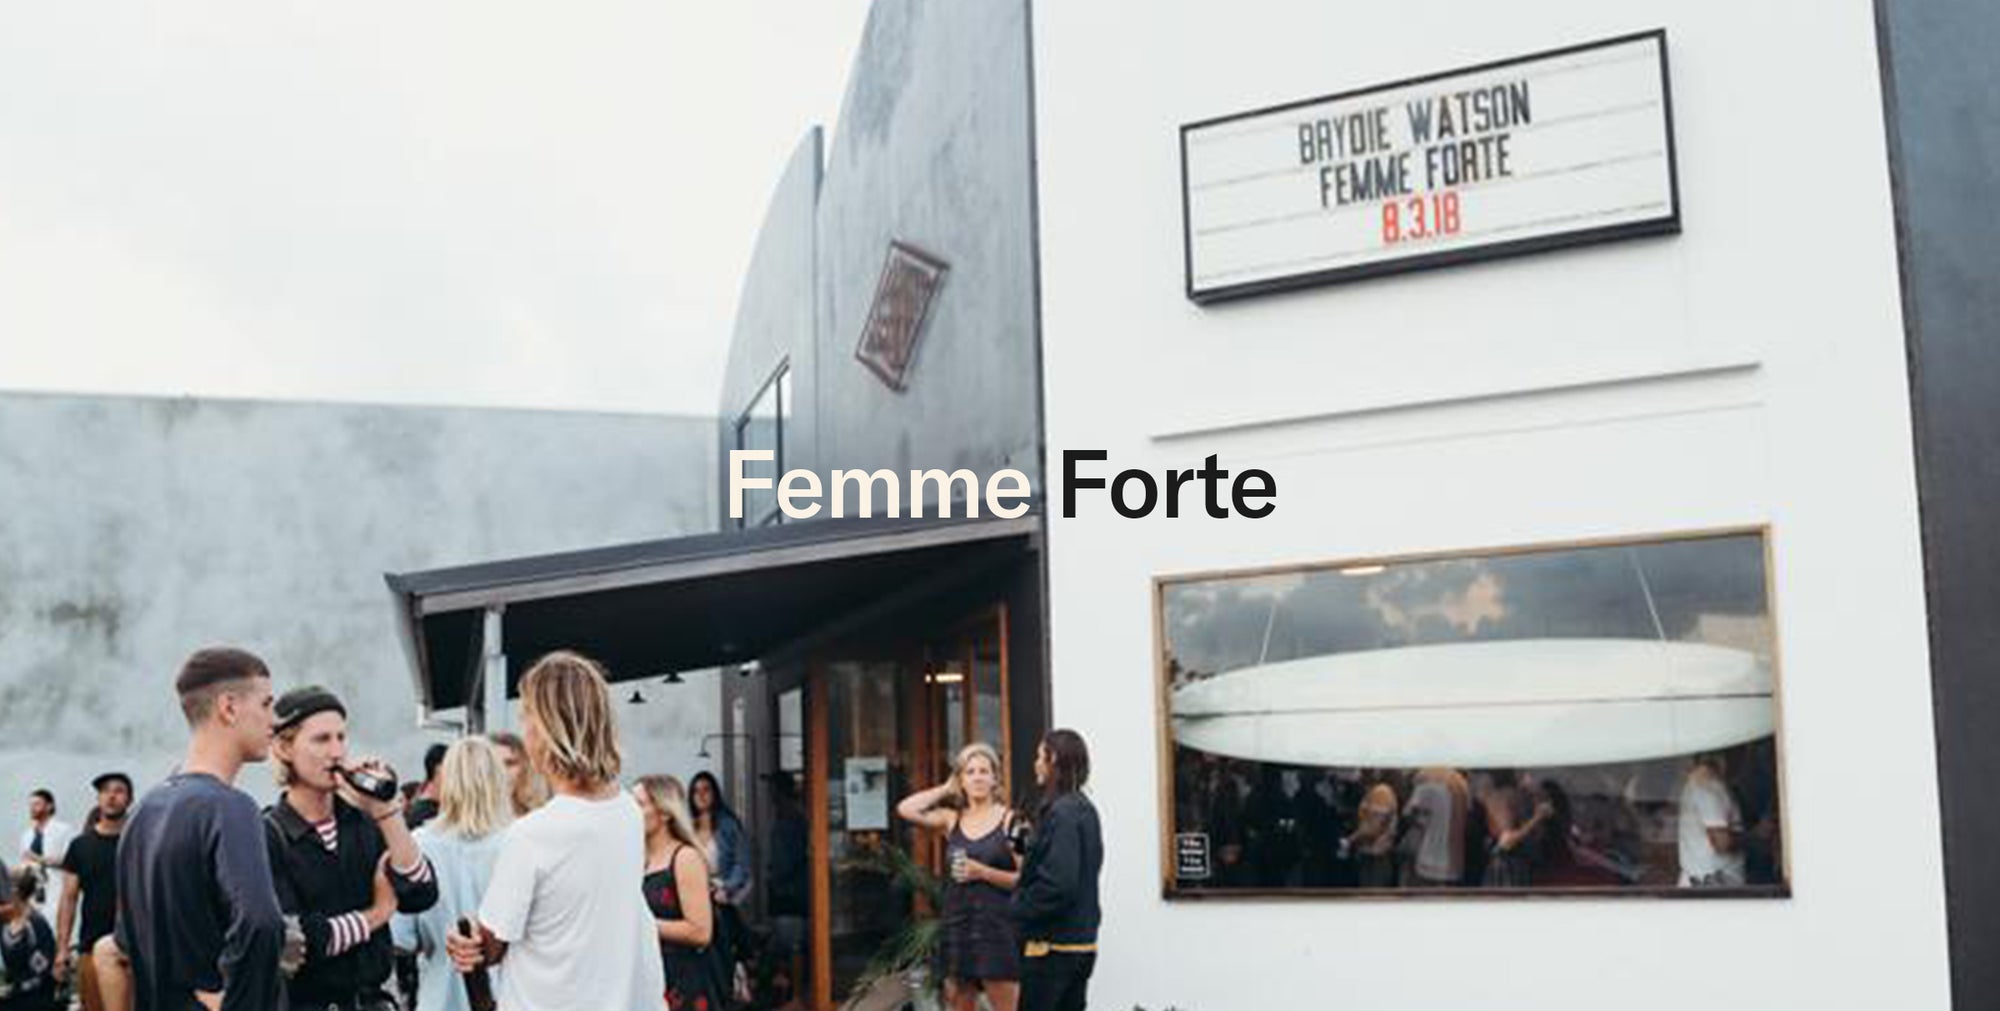 Femme Forte by Brydie Watson